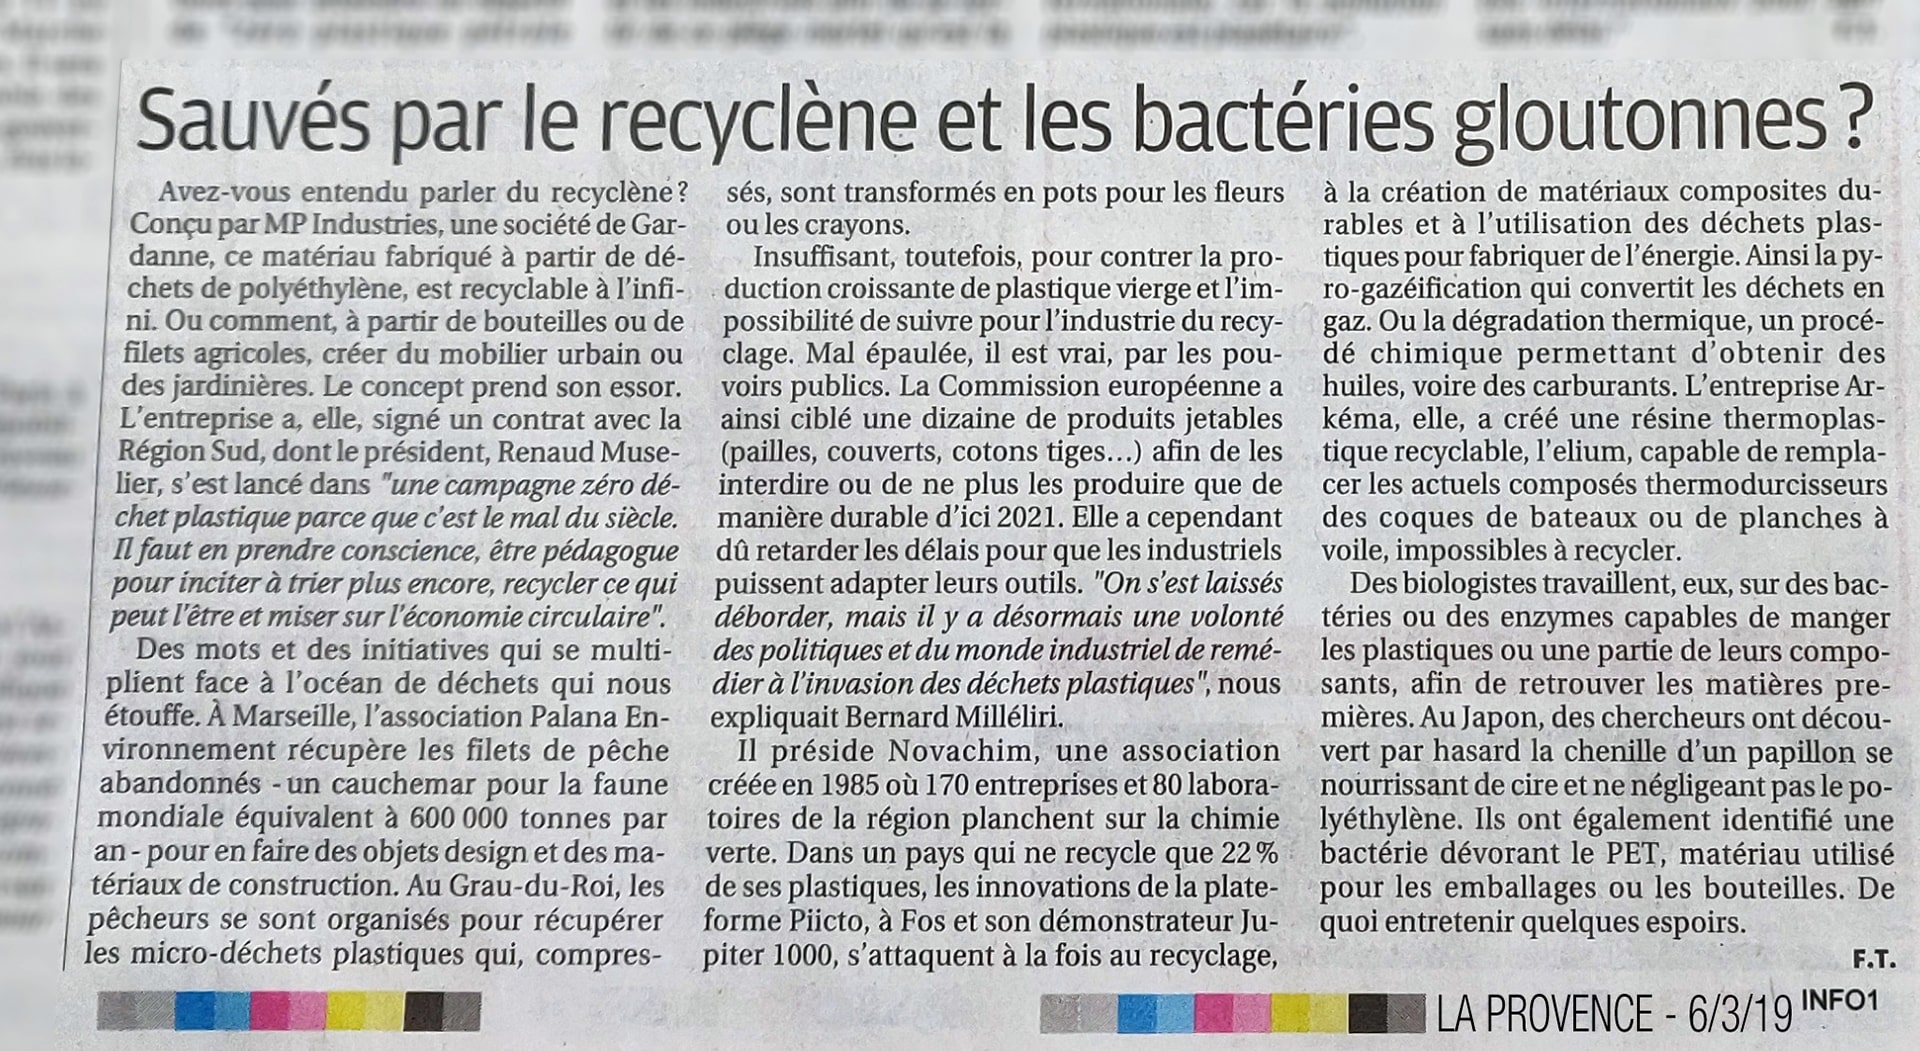 “Sauvés par le Recyclène ?”